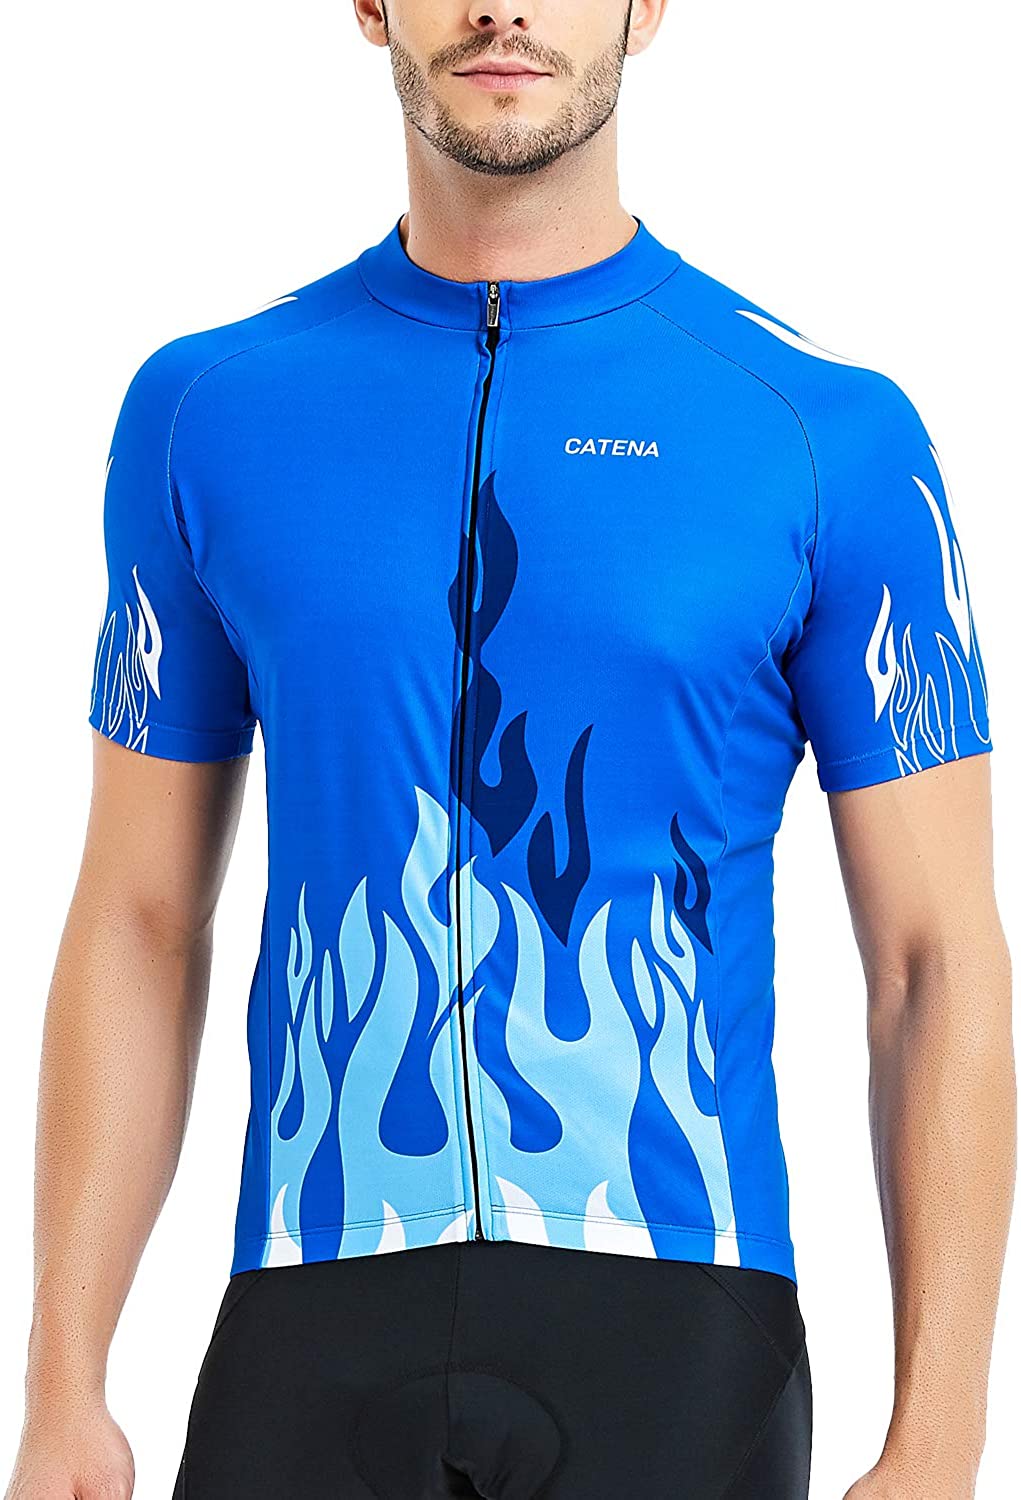 Catena Womens Cycling Jersey Short Sleeve Shirt Running Top Moisture Wicking Workout Sports T-Shirt 